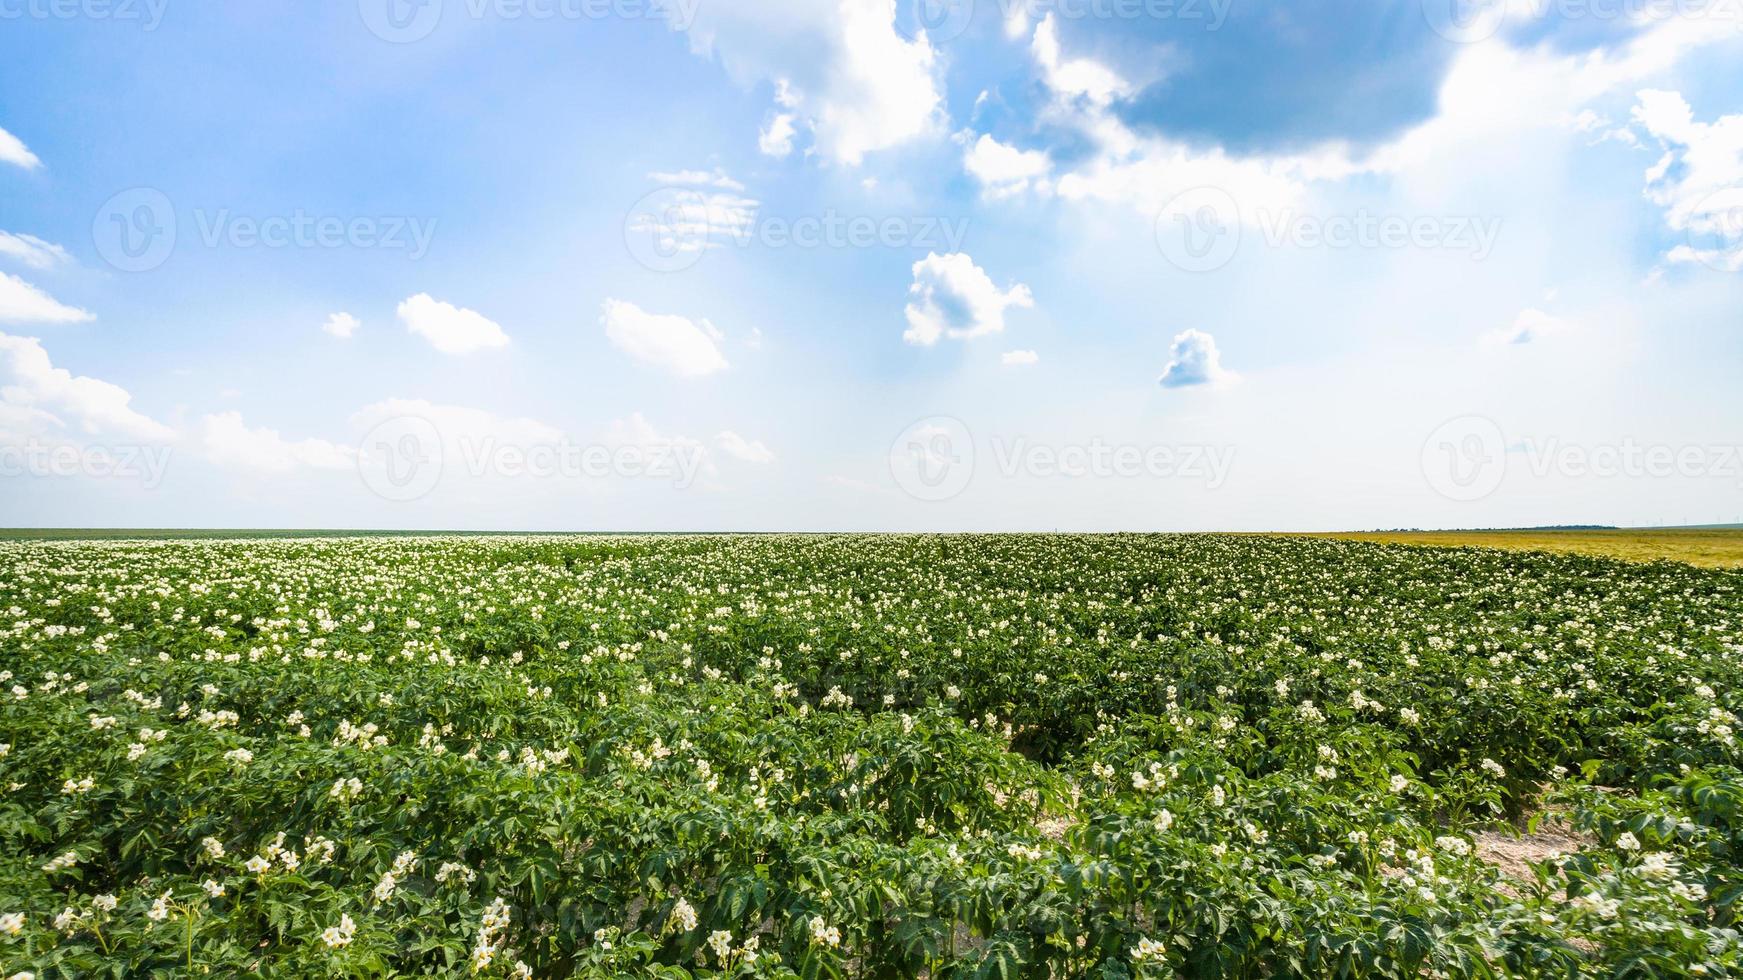 vista del campo de patatas verdes en francia foto